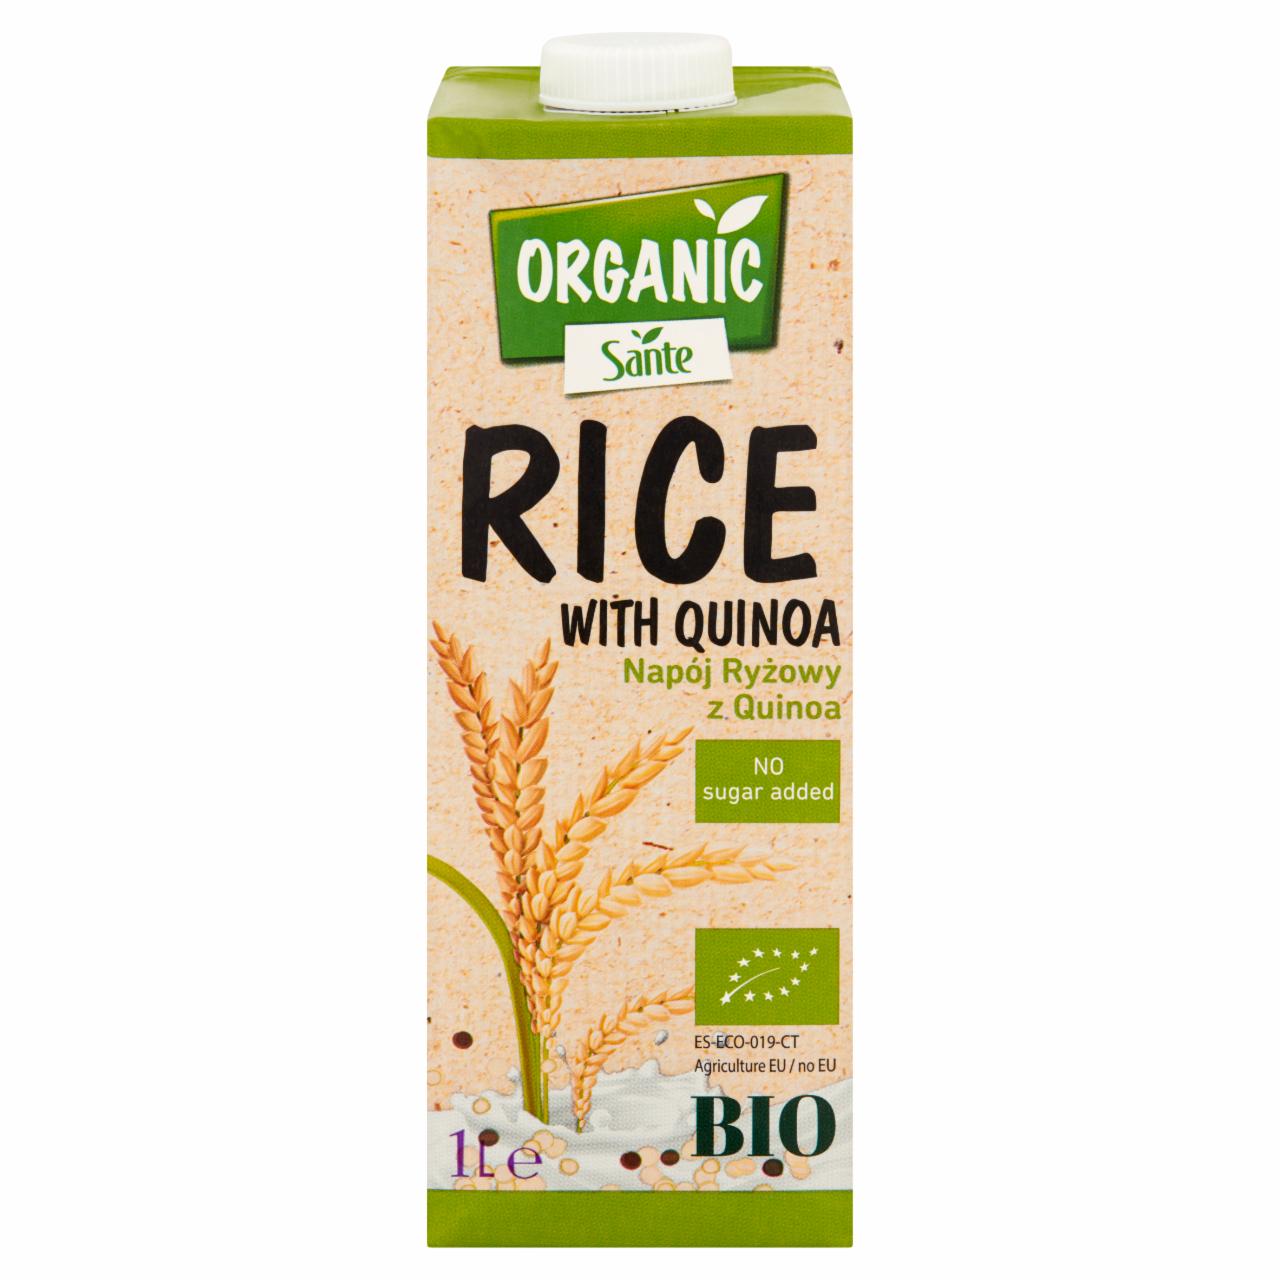 Zdjęcia - Sante Organic Napój ryżowy z quinoa 1 l